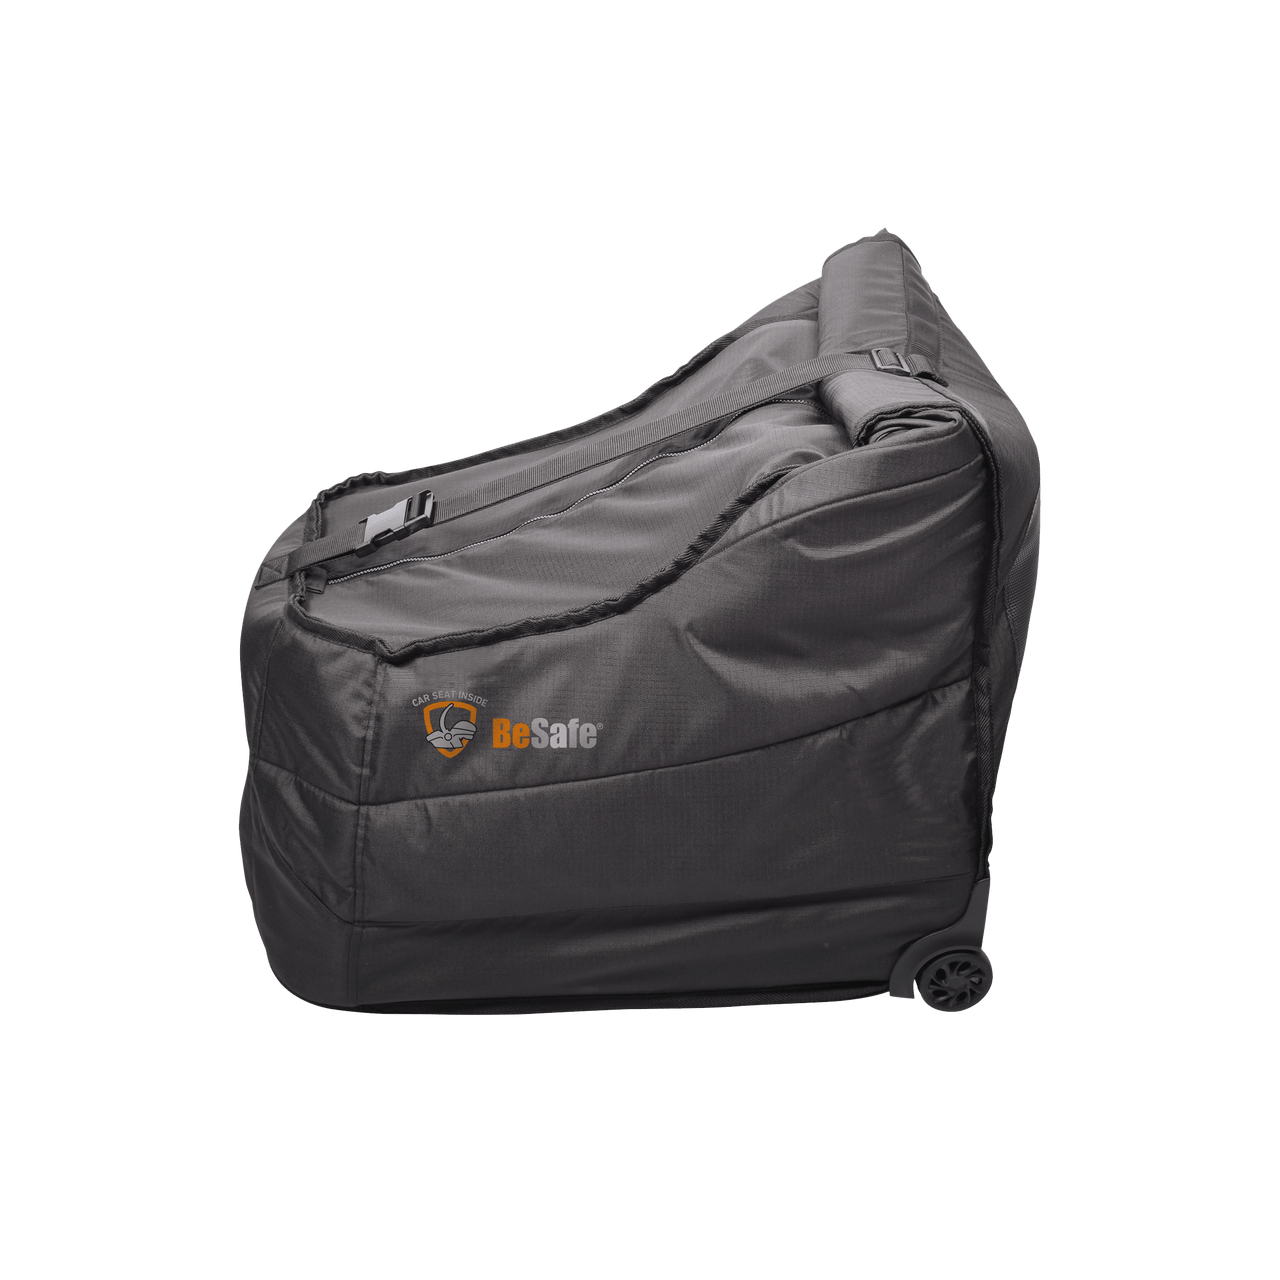 BeSafe Transport Protection Bag